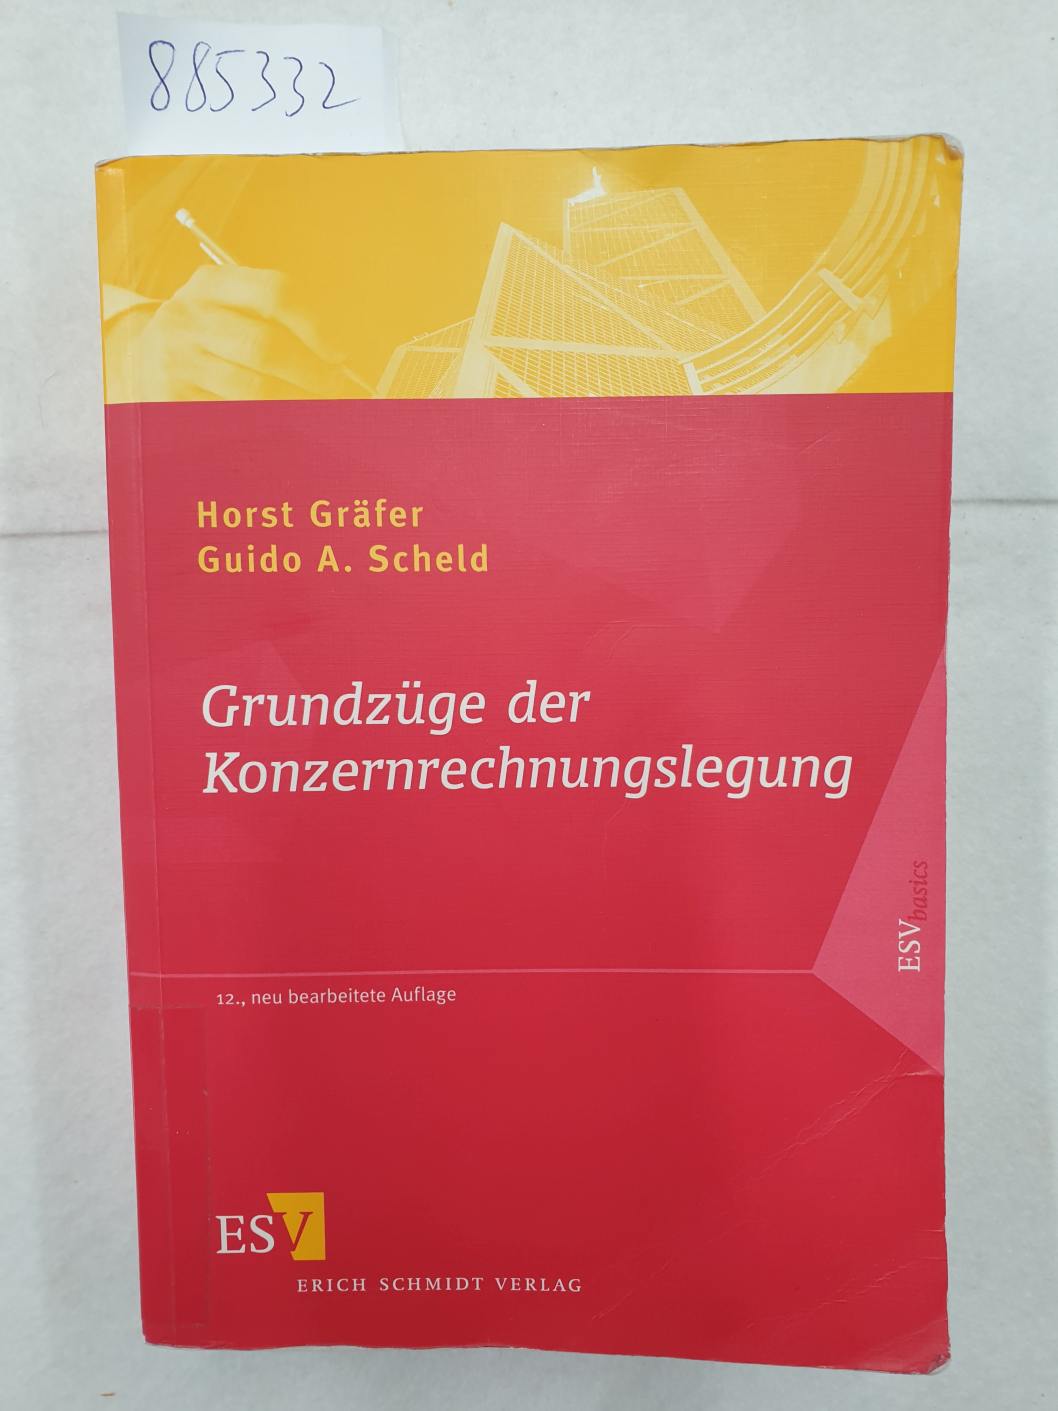 Grundzüge der Konzernrechnungslegung : (Mit Fragen, Aufgaben und Lösungen) : - Gräfer, Horst und Guido A. Scheld